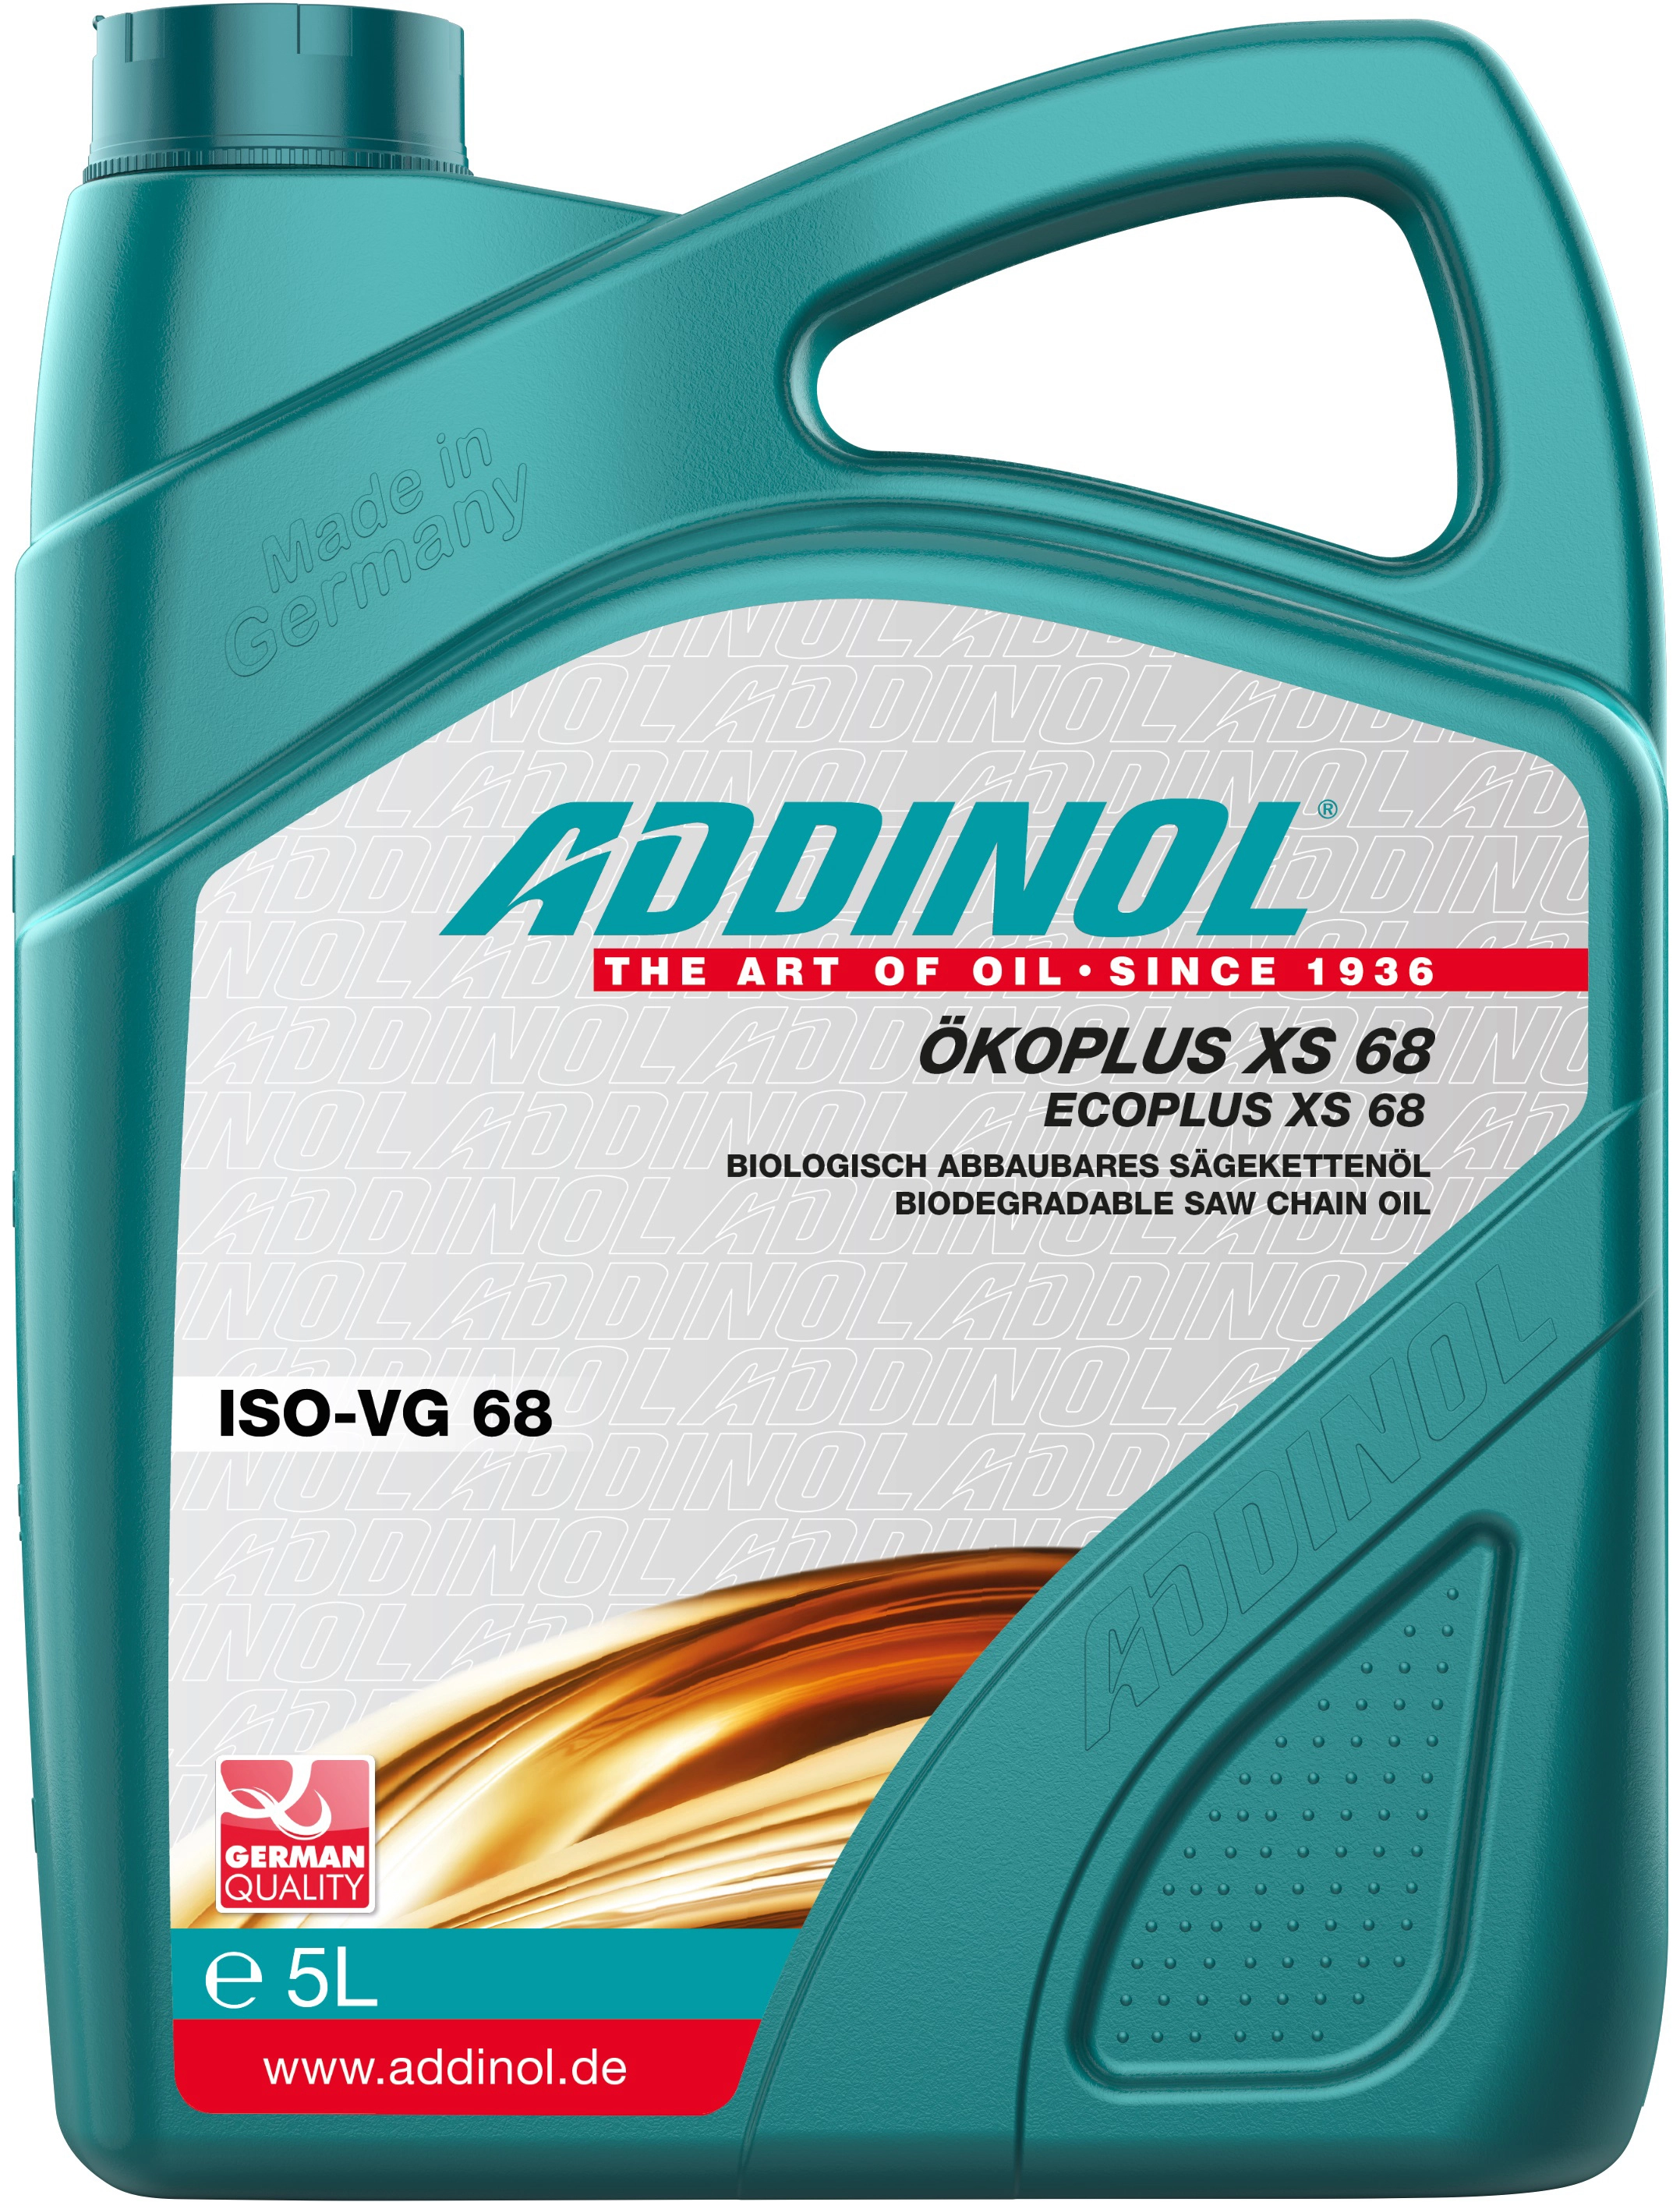 Addinol Bio-Sägekettenöl 5 l XS 68 kaufen bei OBI